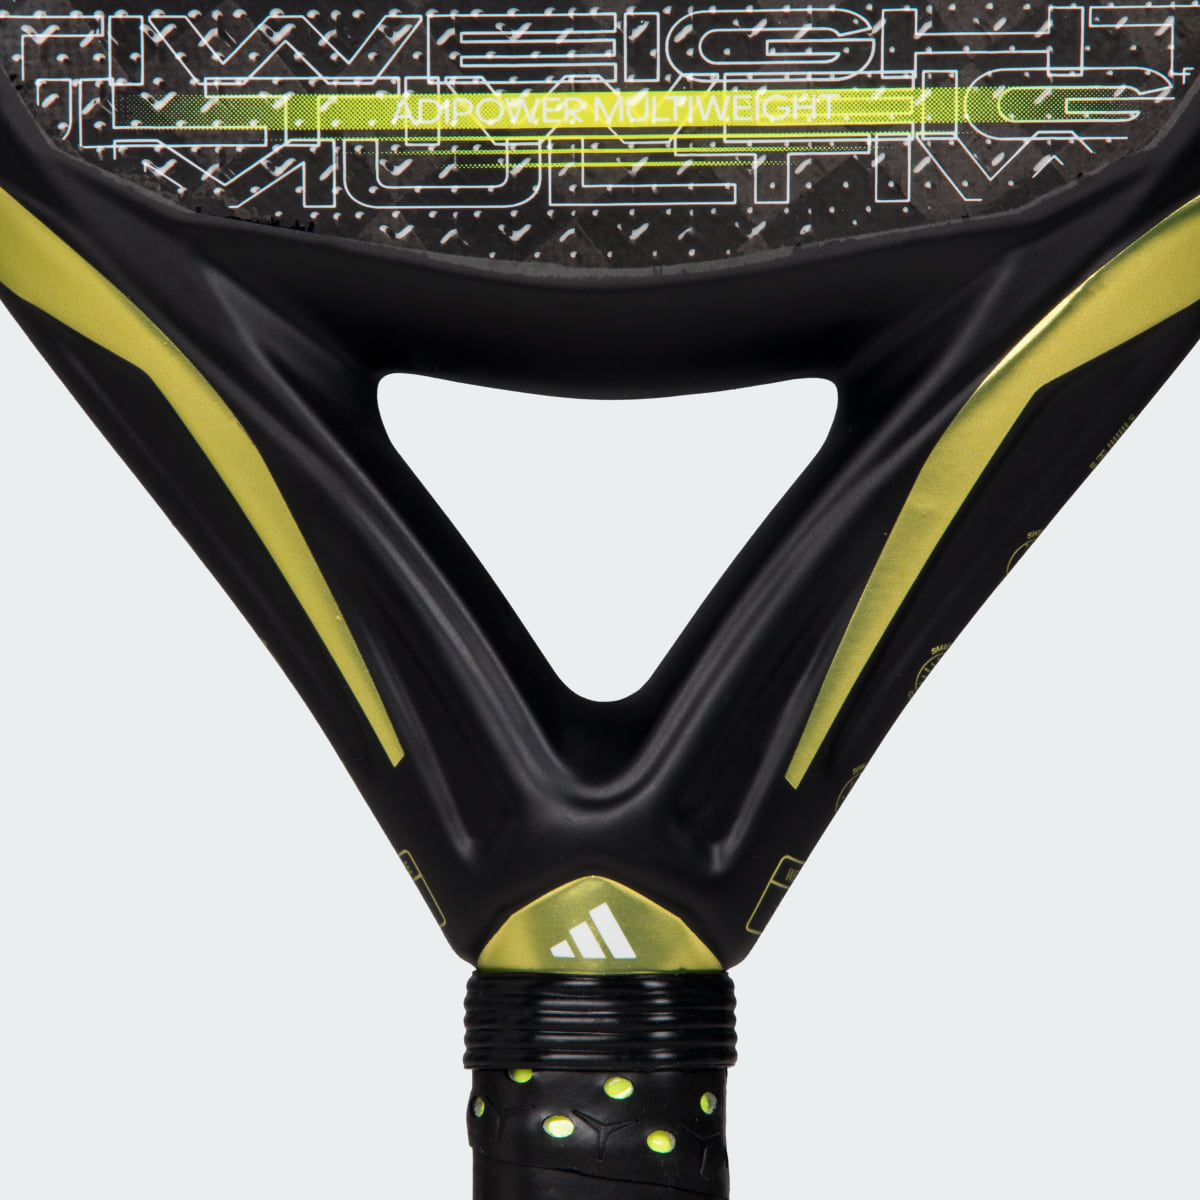 Adidas Racchetta da padel adipower Multiweight 3.3. 5